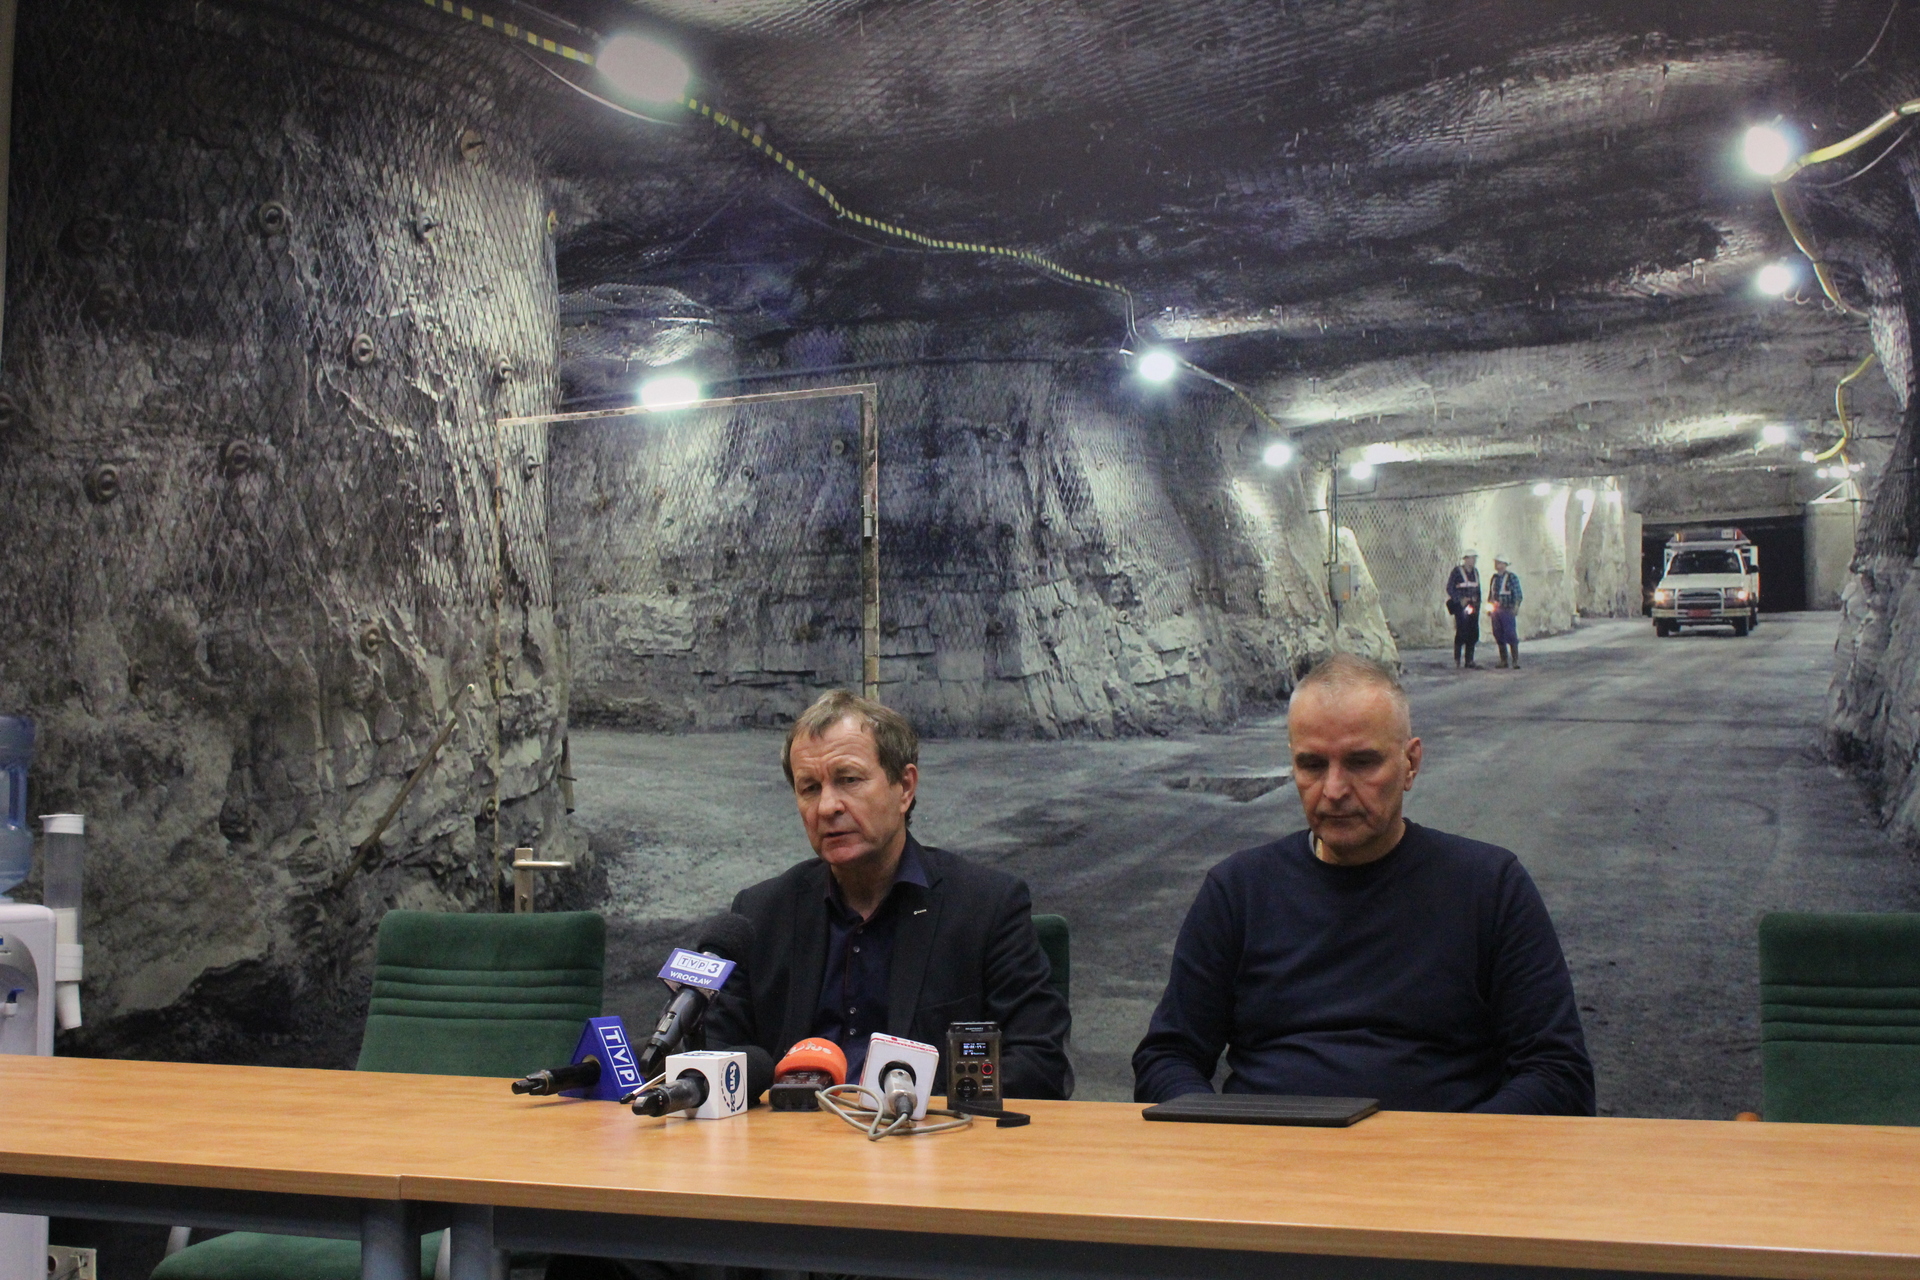 ZG RUDNA. Dwóch górników zlokalizowano, trwają poszukiwania czterech pozostałych